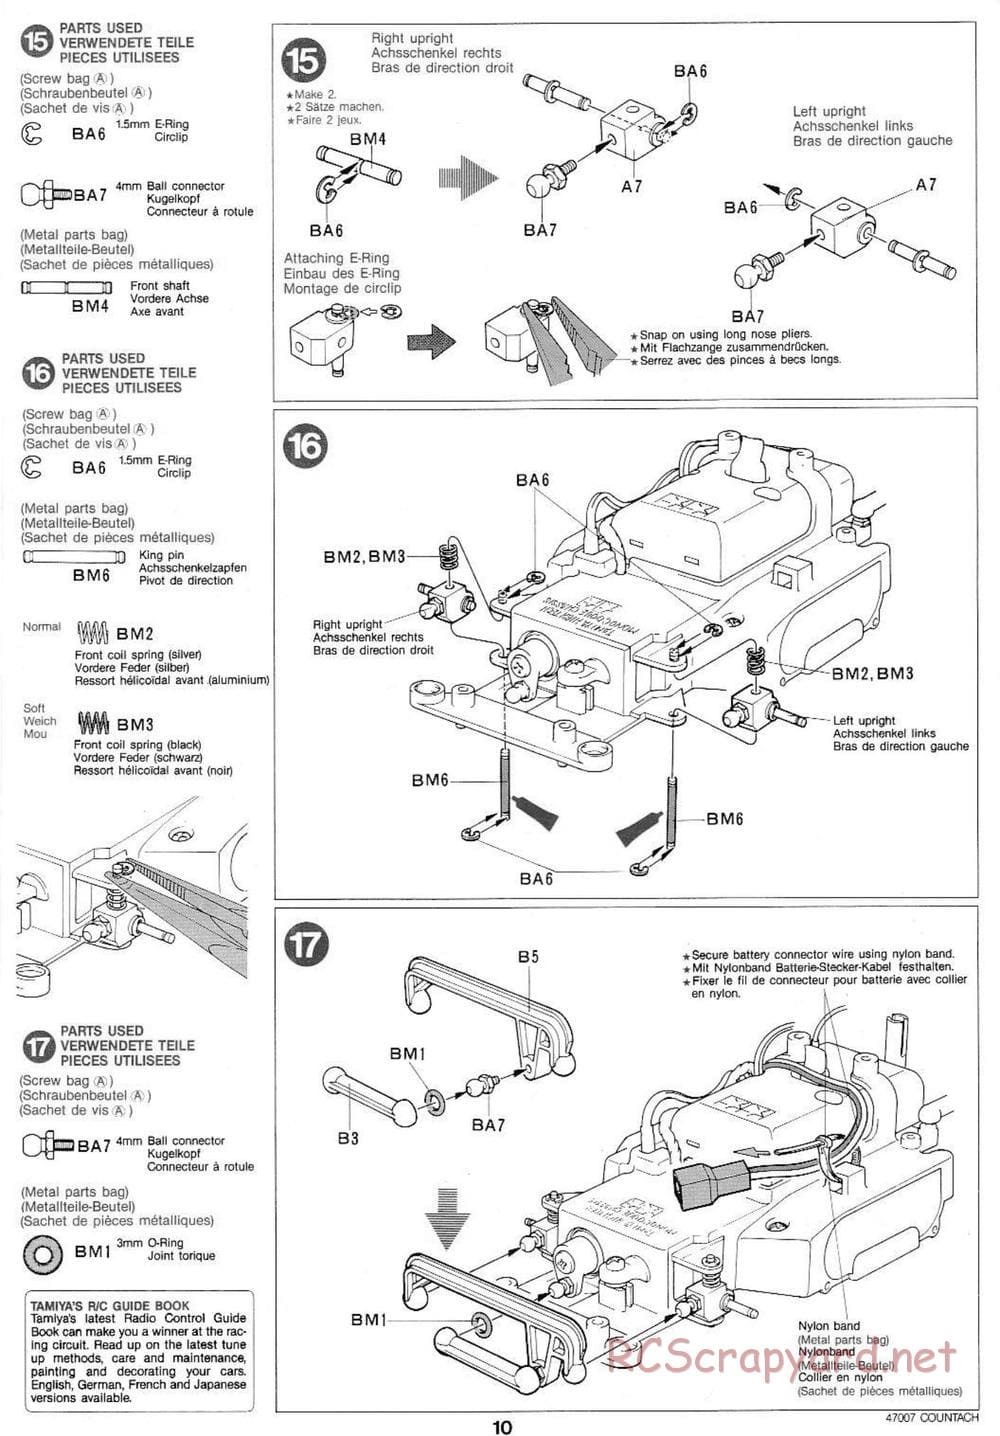 Tamiya - Tamtech - Lamborghini Countach 5000 Chassis - Manual - Page 10